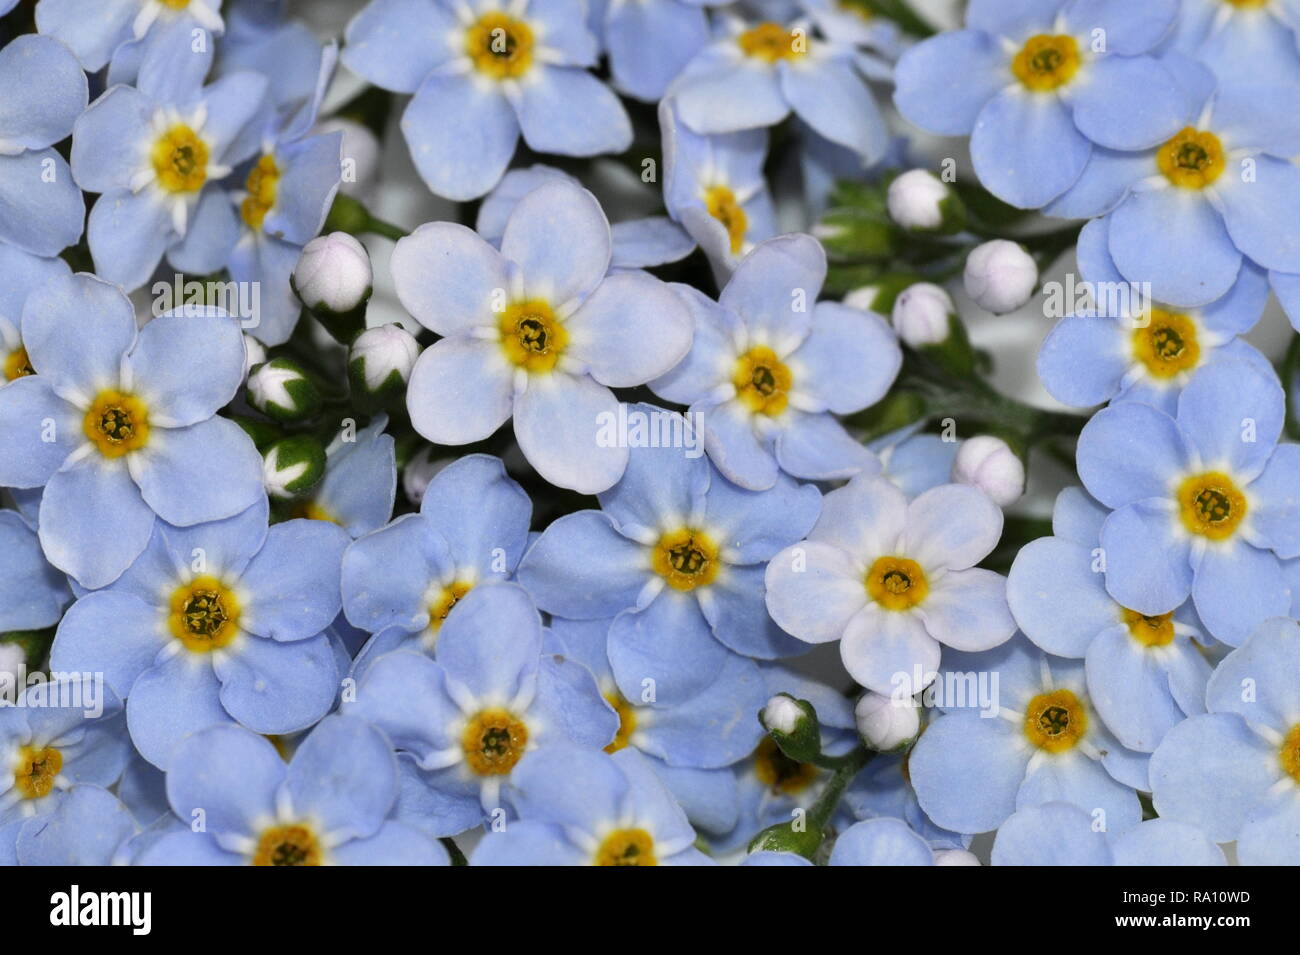 Gros plan sur le bleu de l'eau de fleurs sauvages forget-me-not Myosotis scorpioides Banque D'Images